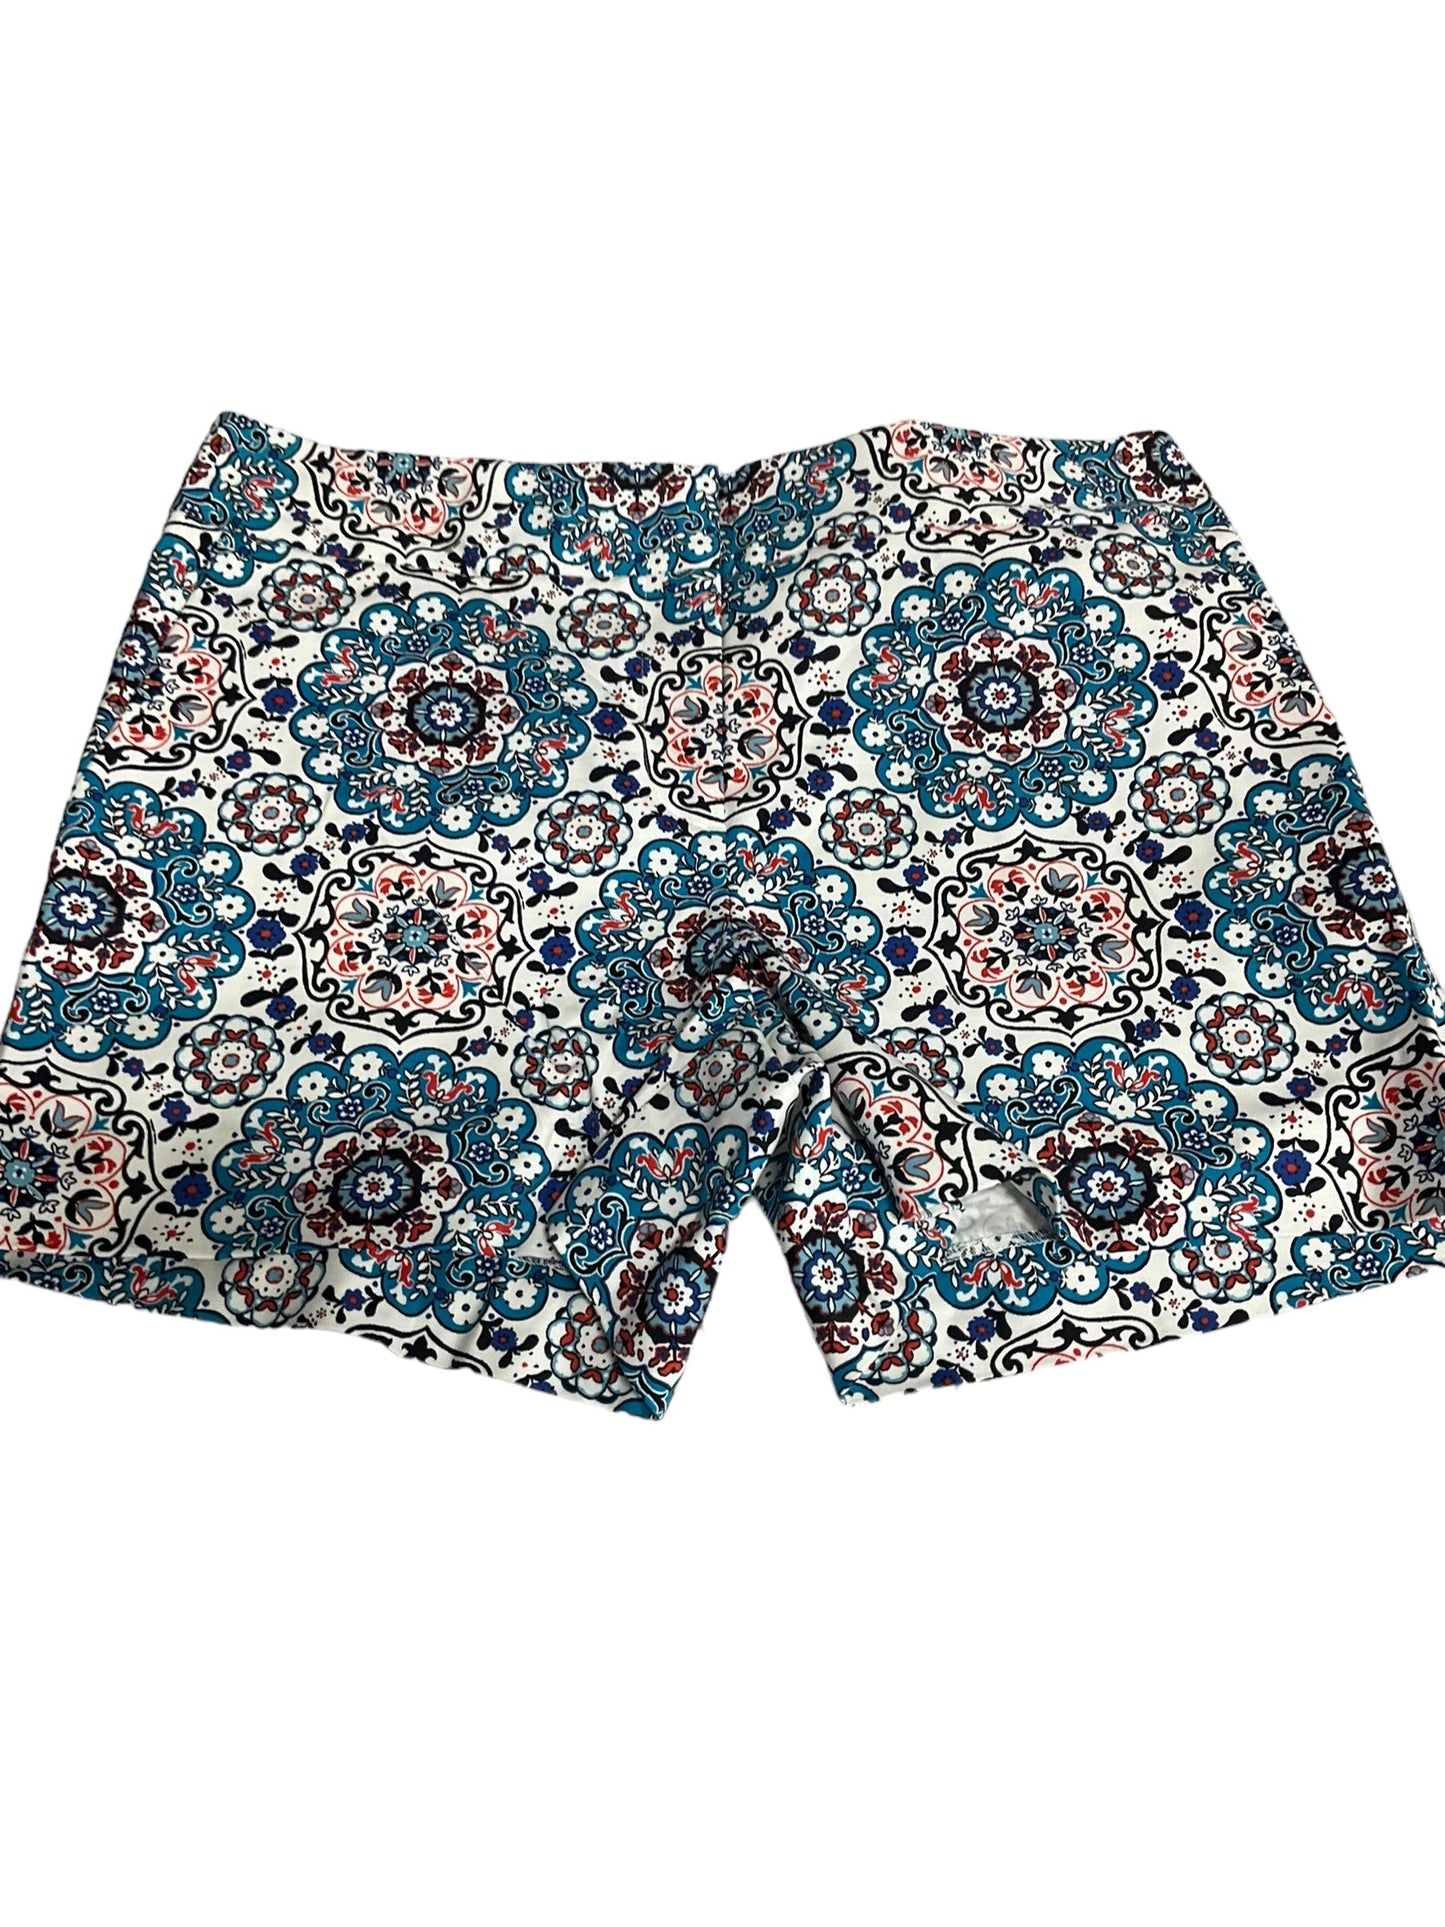 Floral Print Shorts Loft, Size 8